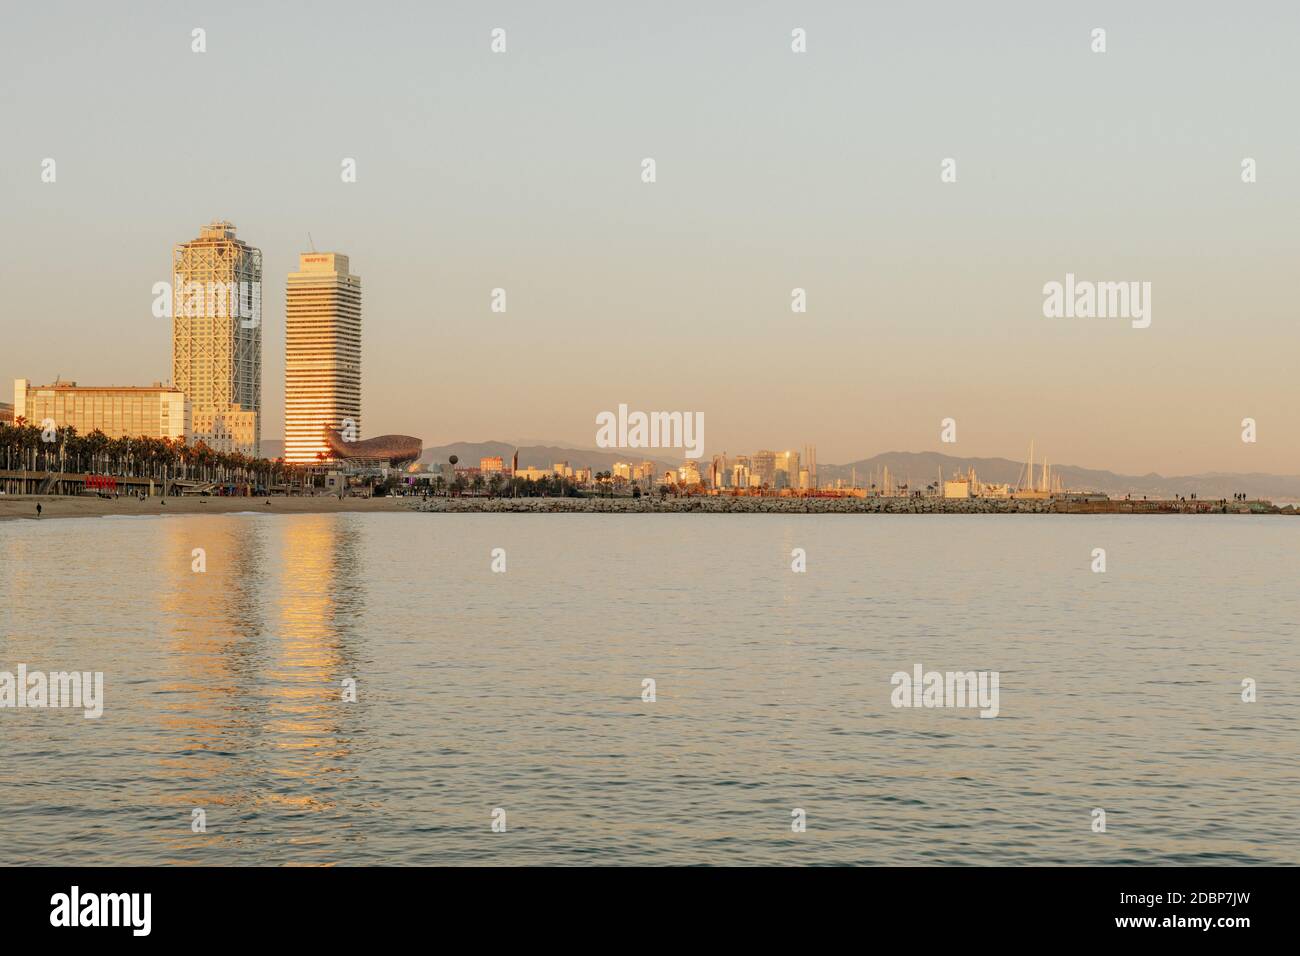 Skyline von Barcelona vom Strand aus, mit Blick auf die Twin Towers von Barcelona Gebäude, reflektiert auf dem Wasser Stockfoto